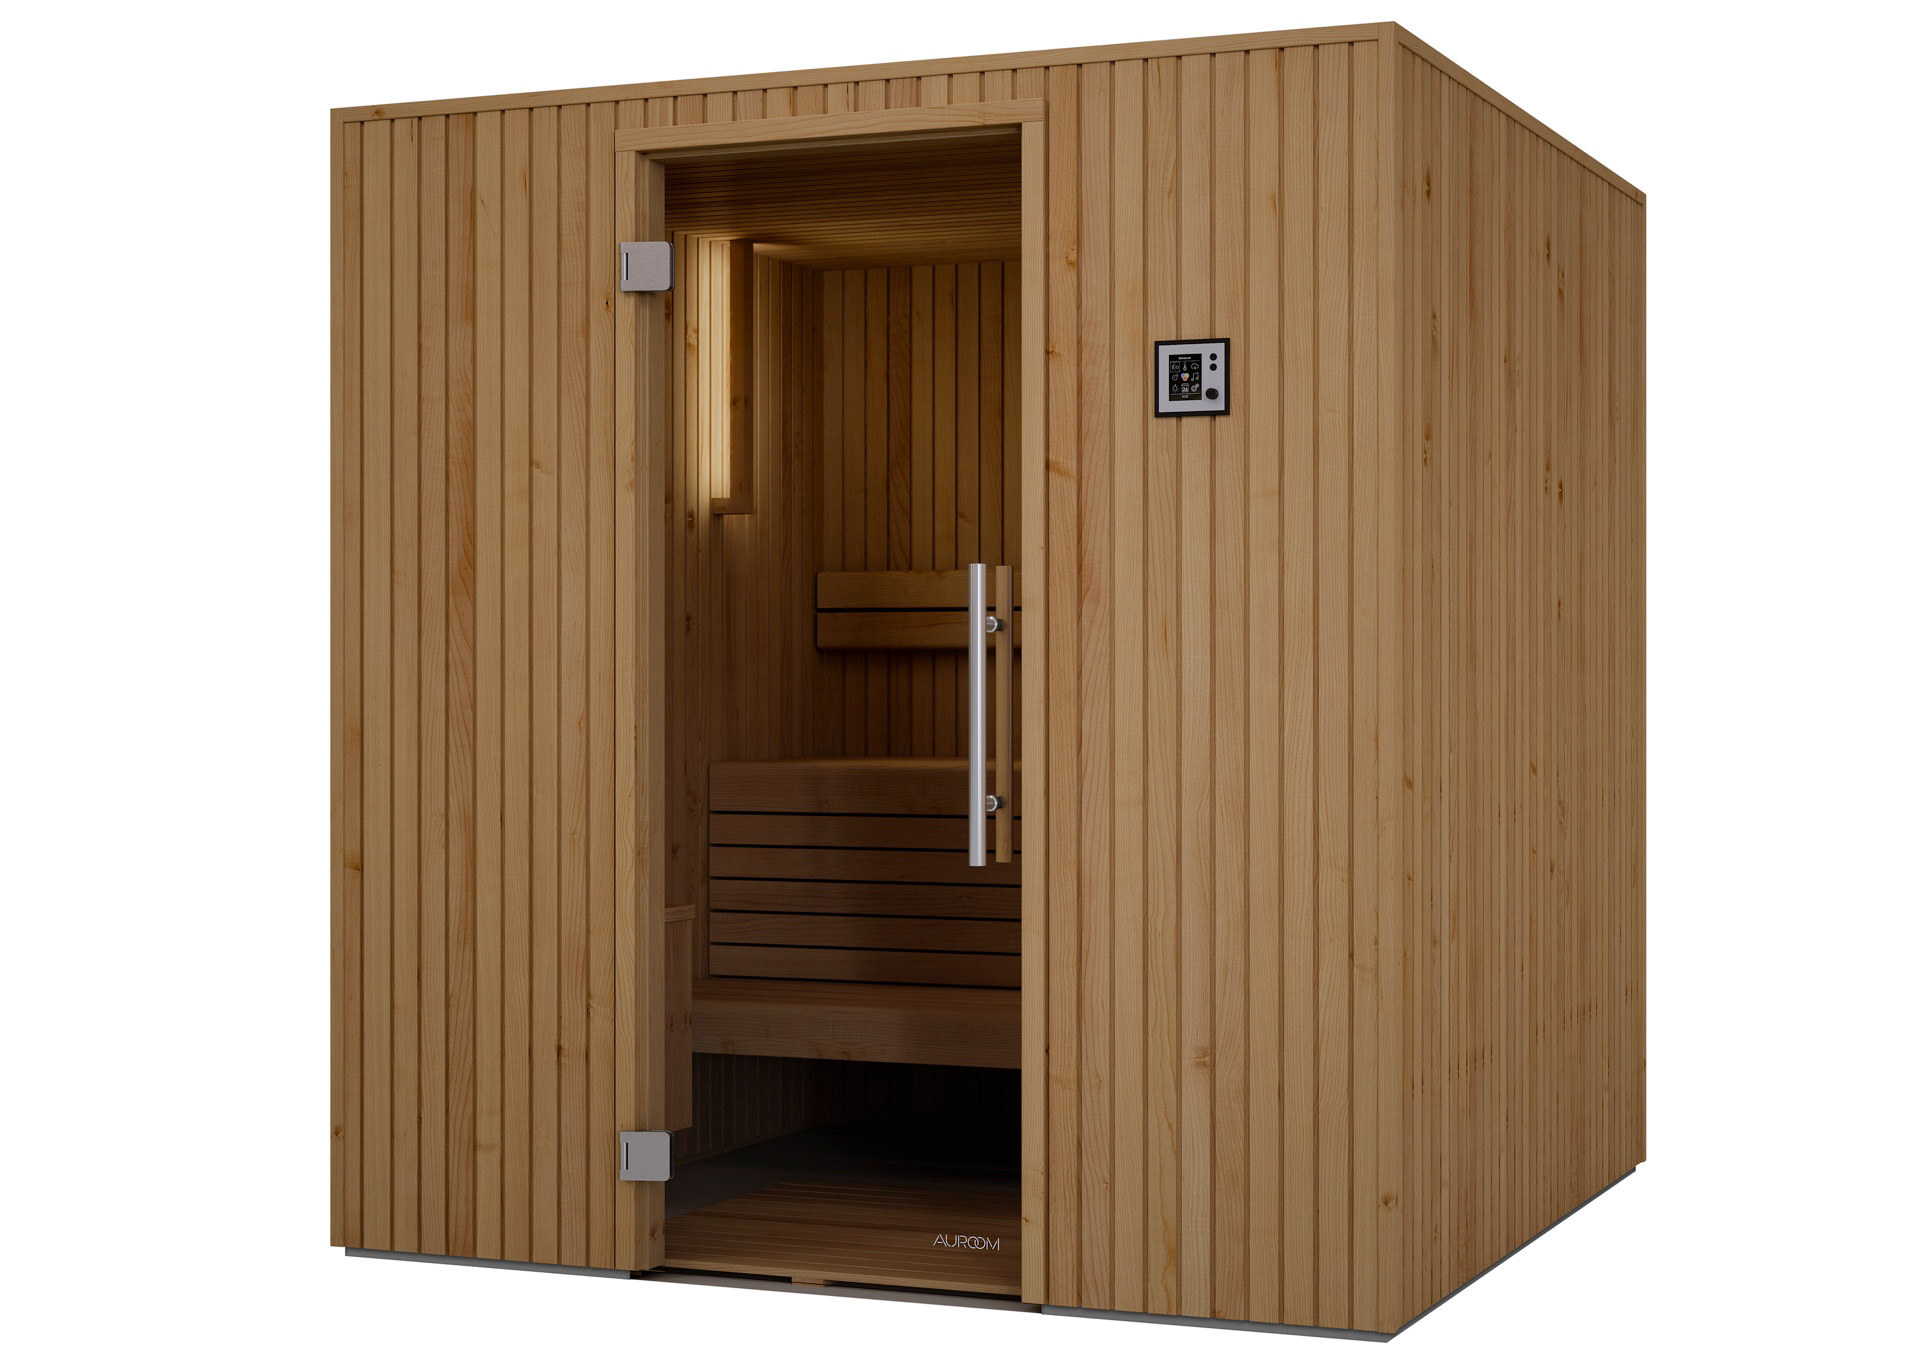 Beleuchtete Auroom-Sauna Familia aus Erlenholz mit Glastüre im Abverkauf beim Saunahersteller DEISL